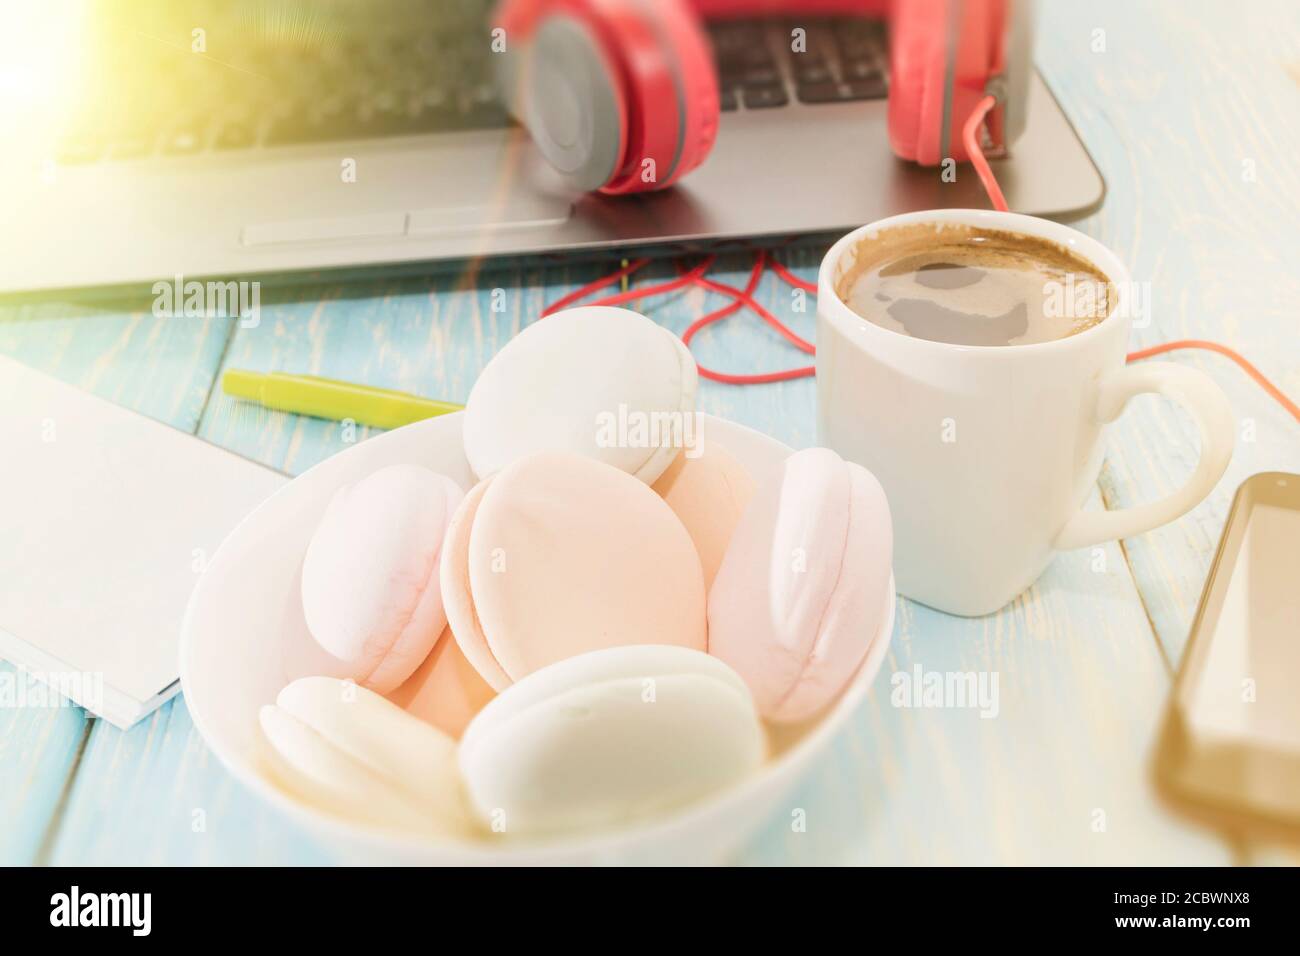 Il marshmallow è accanto al telefono e le cuffie rosse e una tazza di caffè nero. Pausa caffè. Musica piacevole. Foto Stock